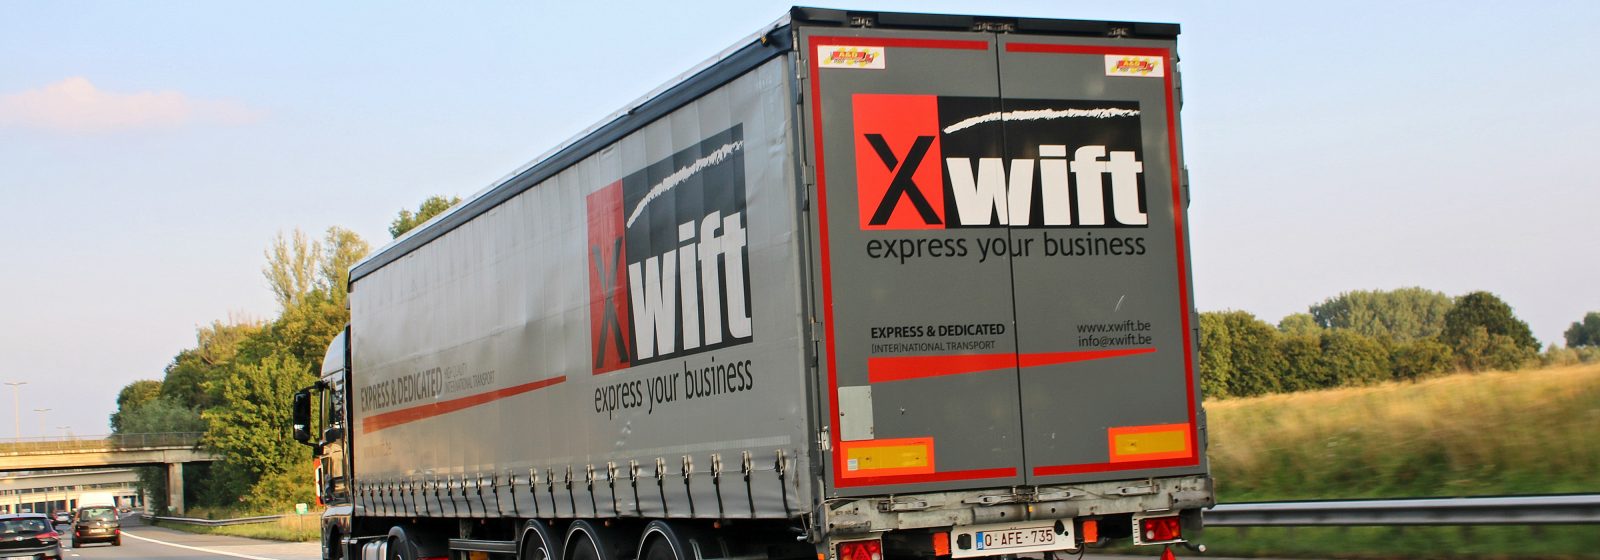 Xwift reikt een premie uit van 1.000 euro voor chauffeurstip